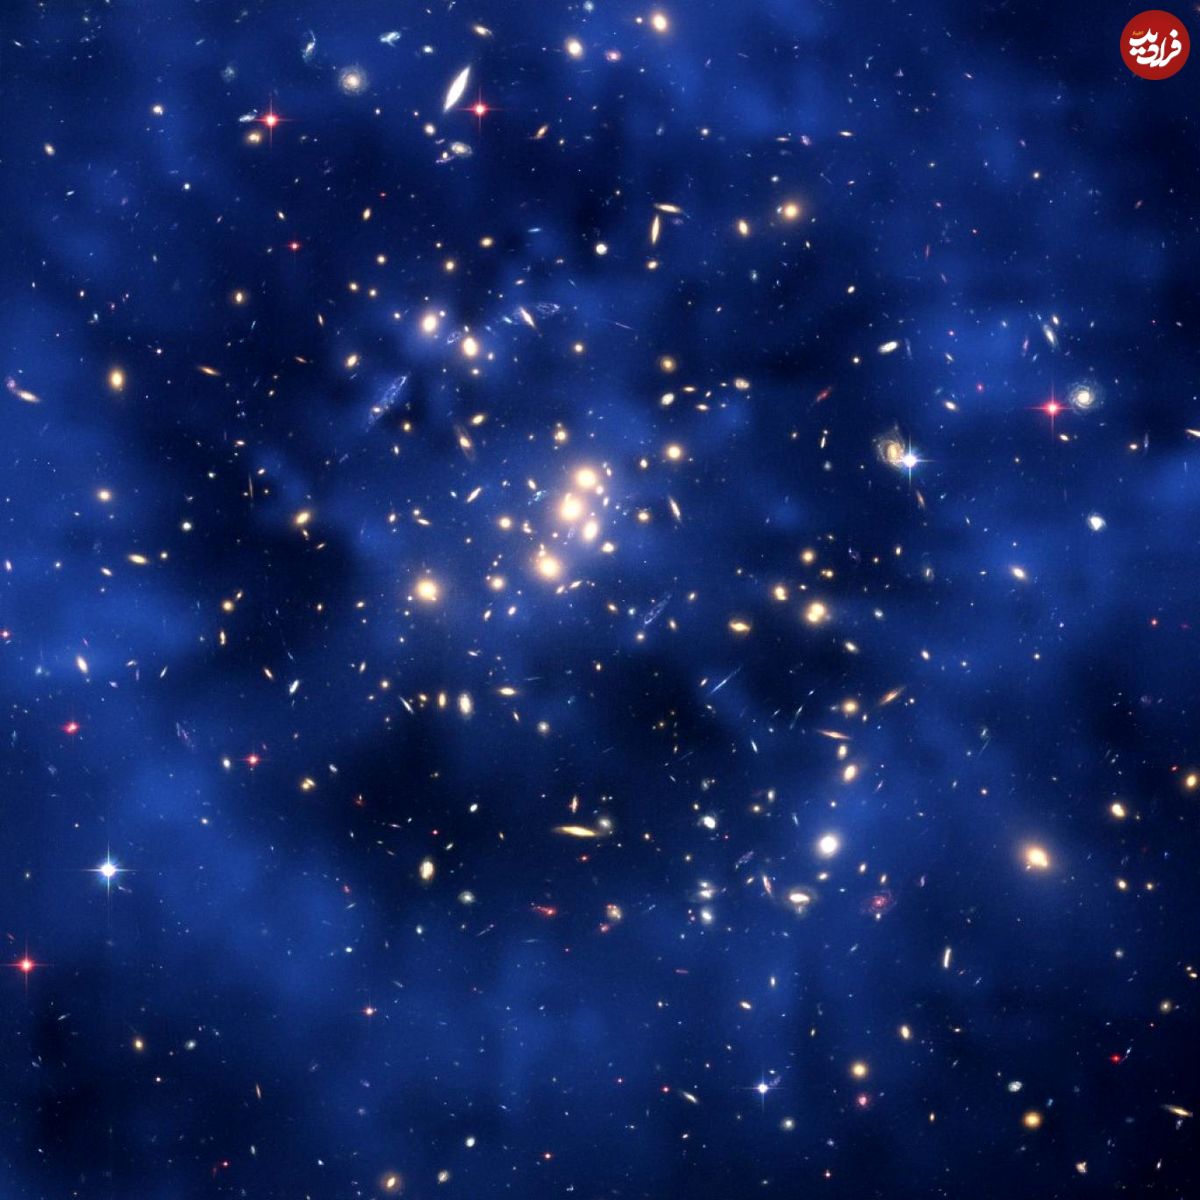 منشأ "ماده تاریک" در جهان از کجاست؟